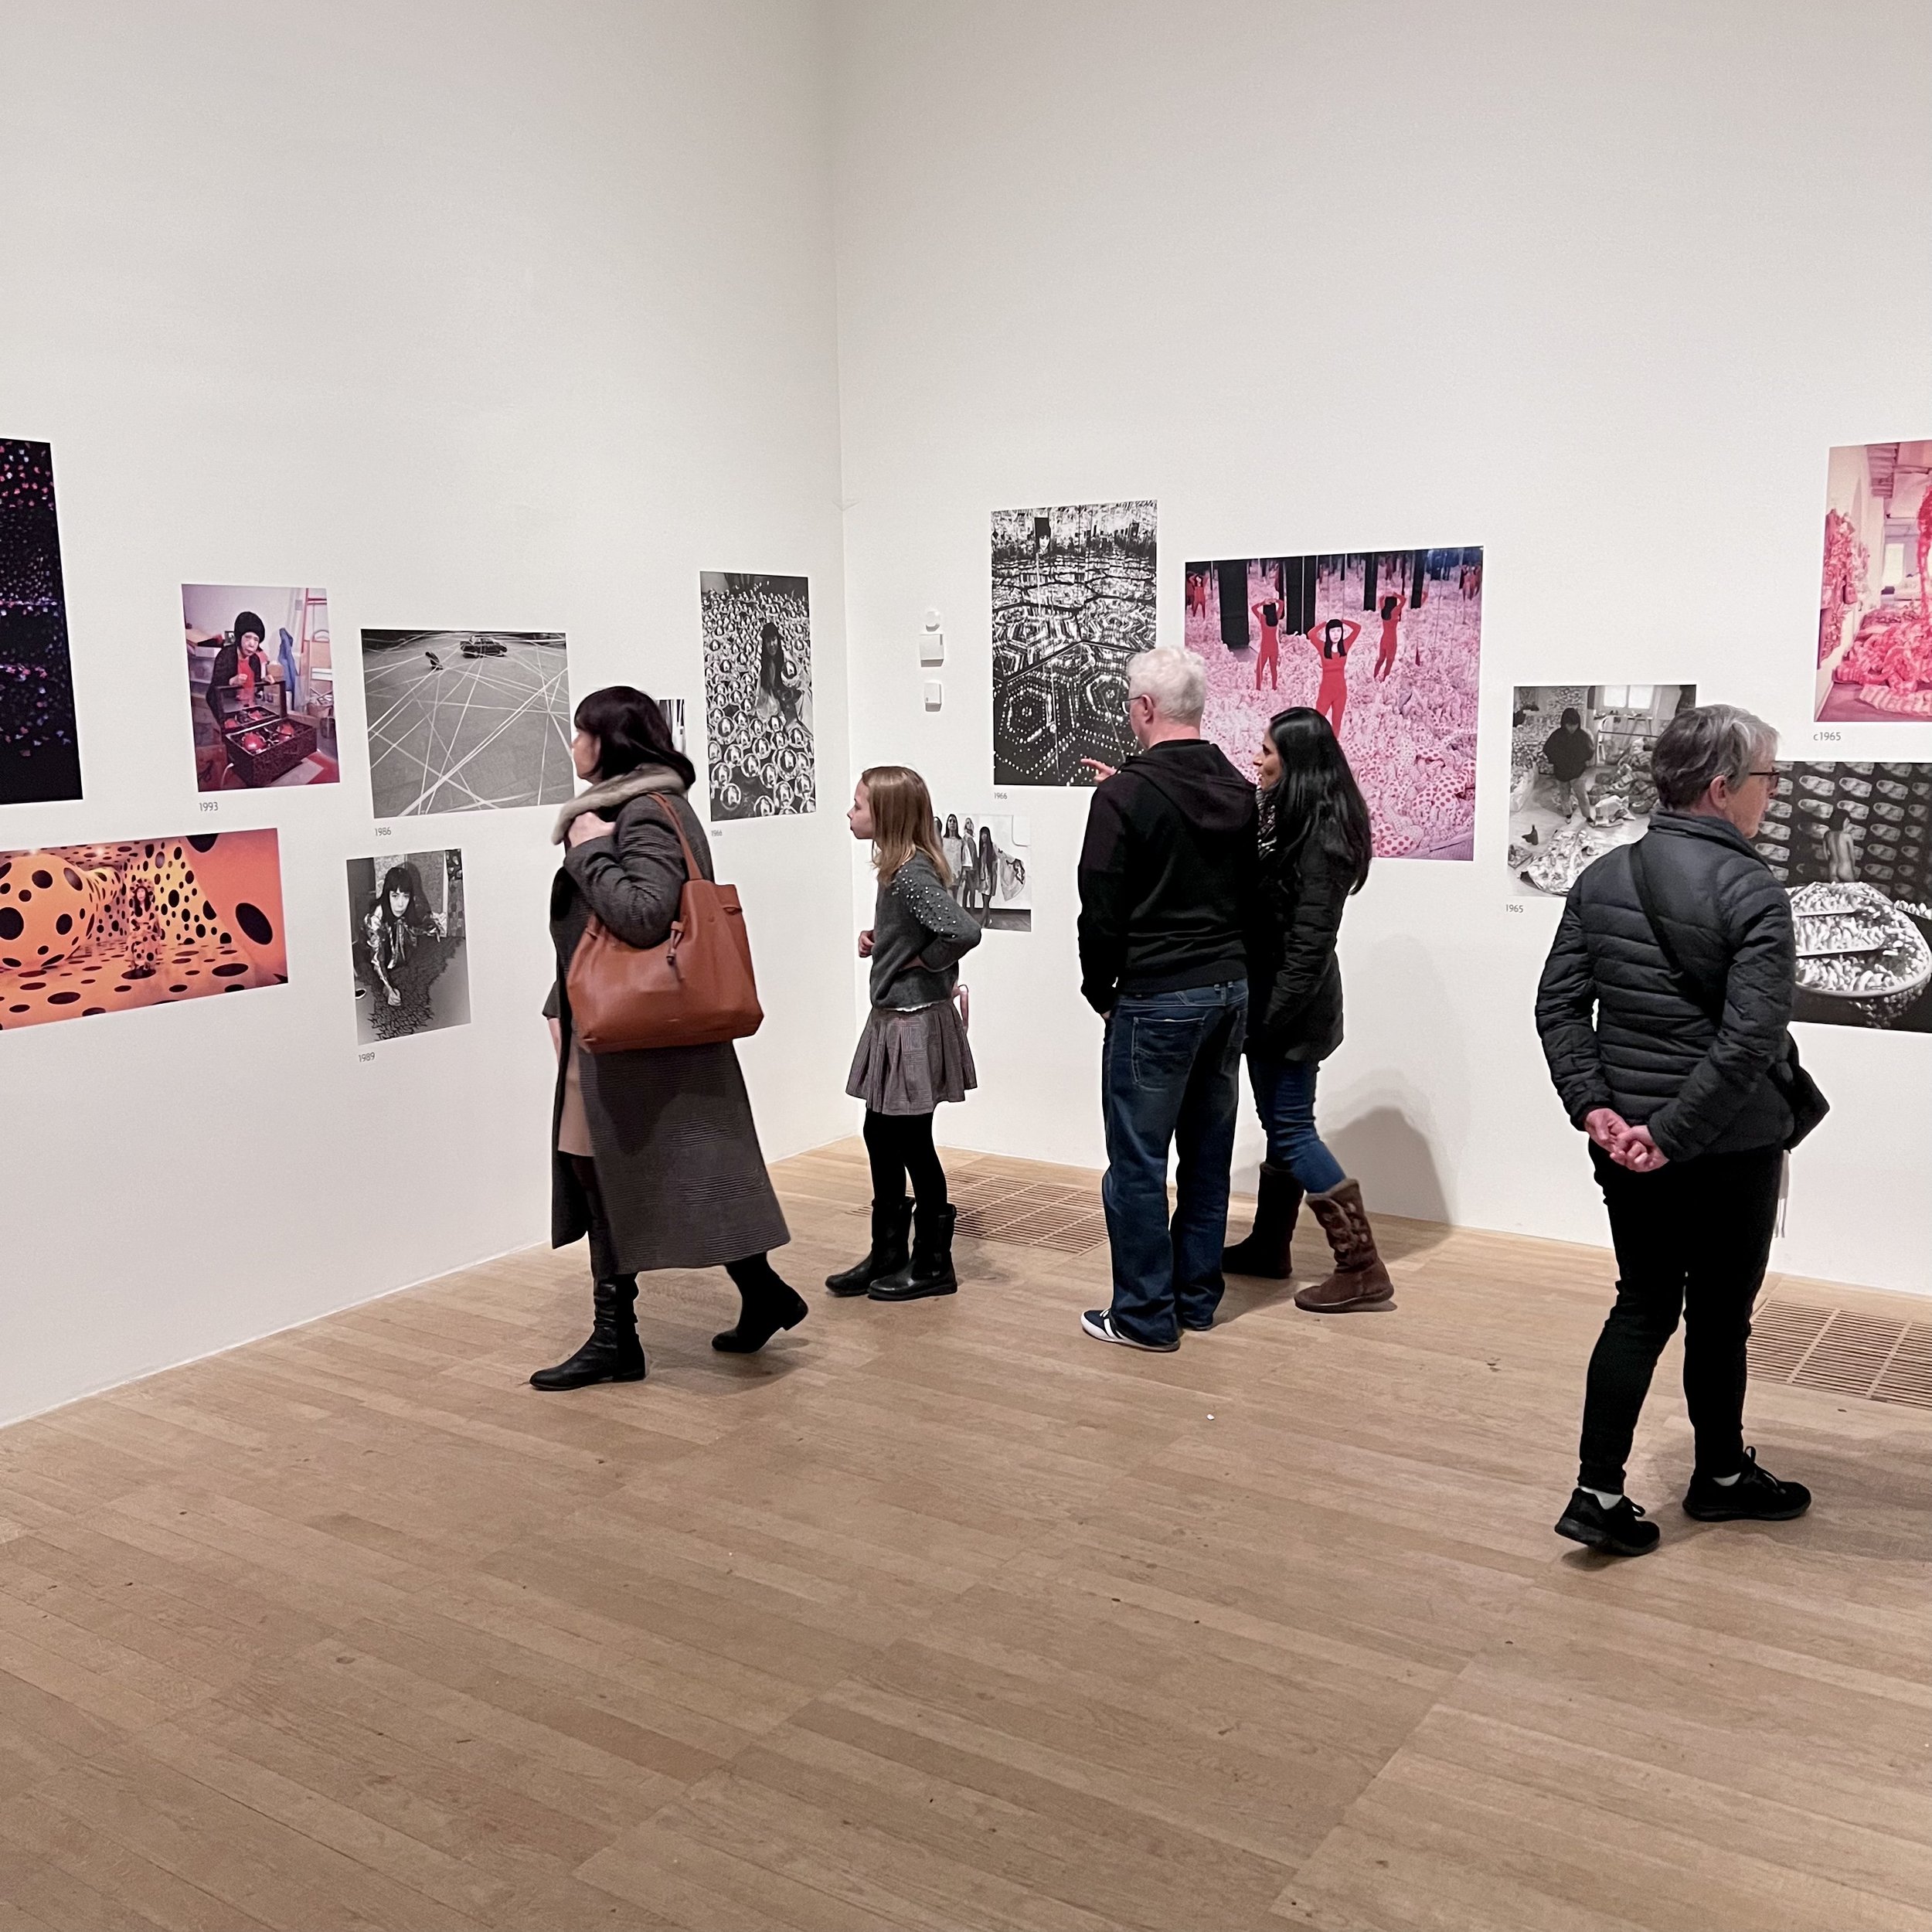 Yayoi Kusama exhibition in the Tate Modern